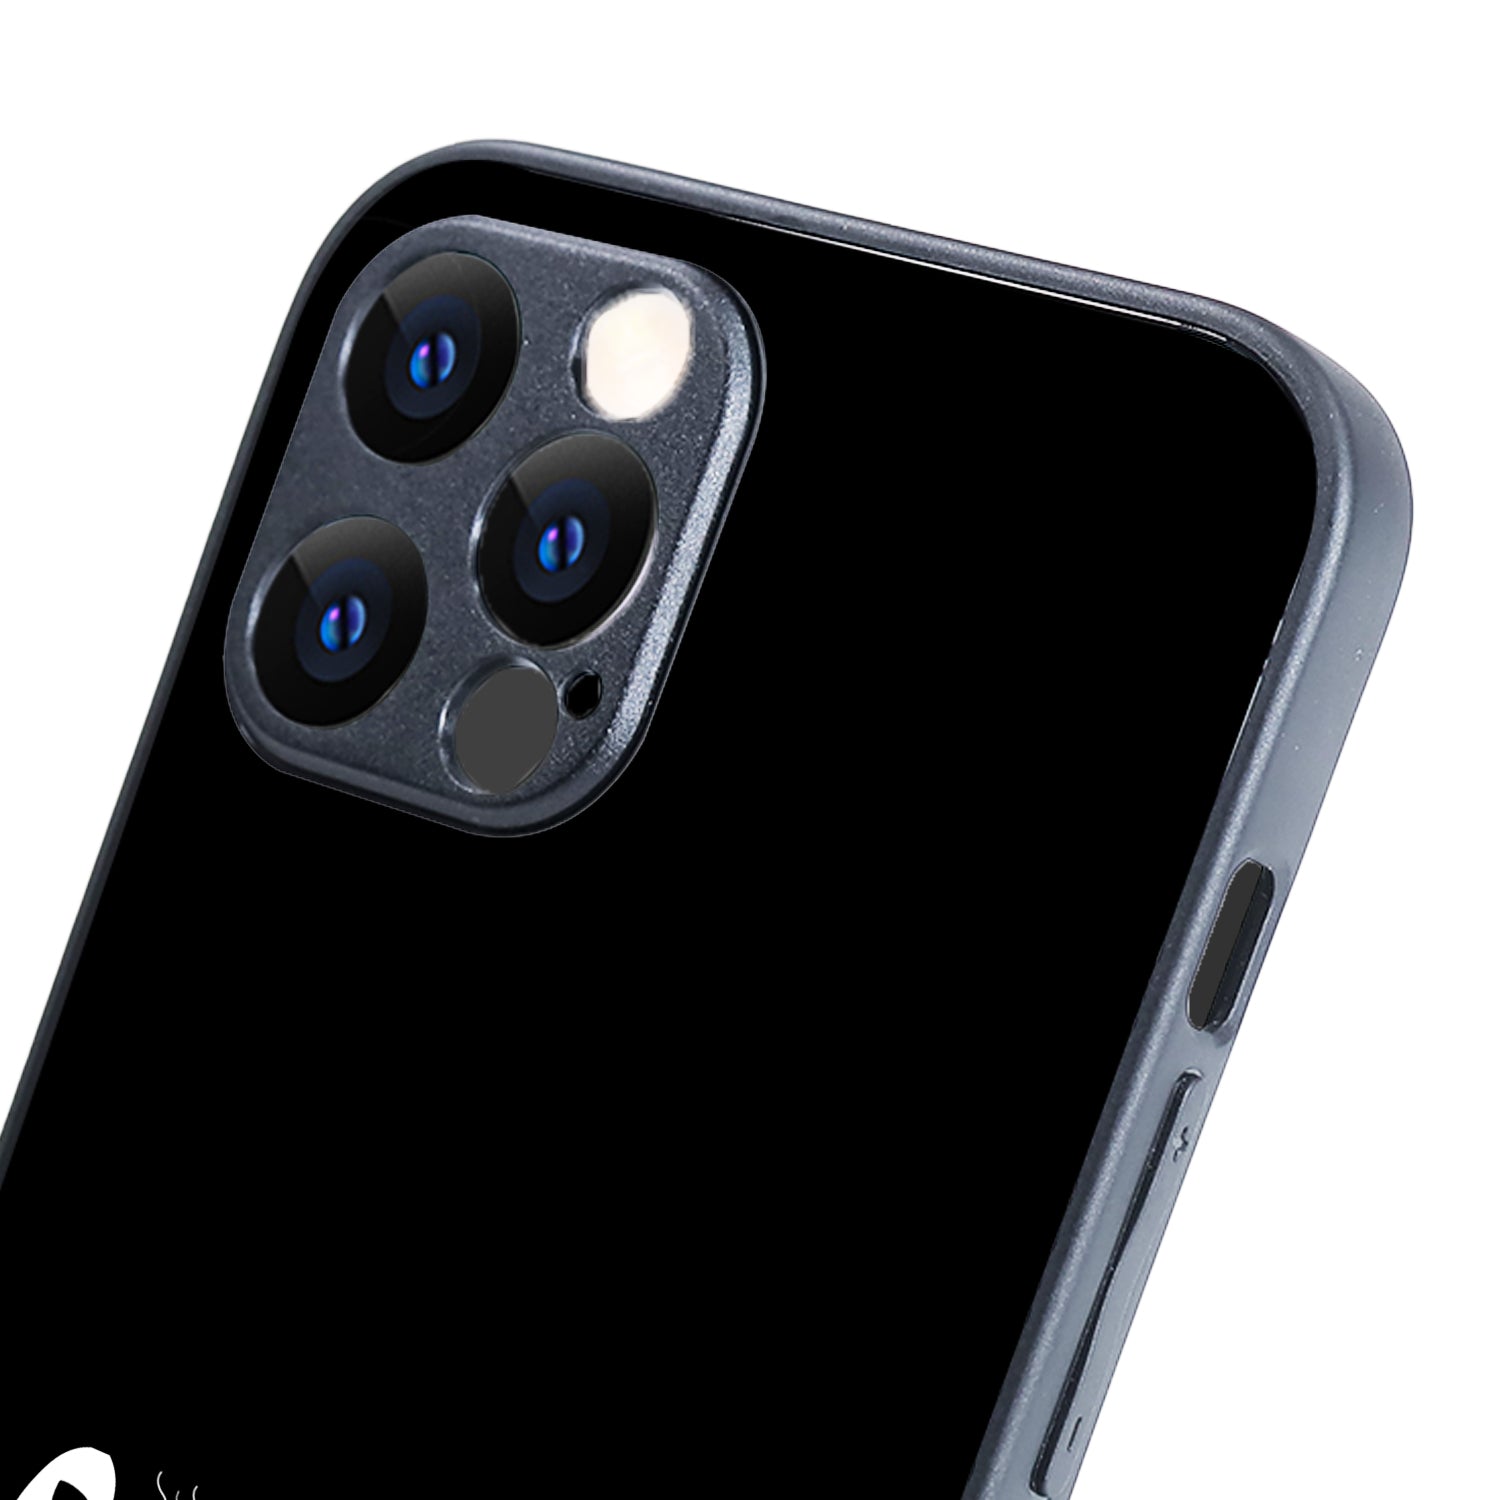 Sanskari Uniword iPhone 12 Pro Max Case